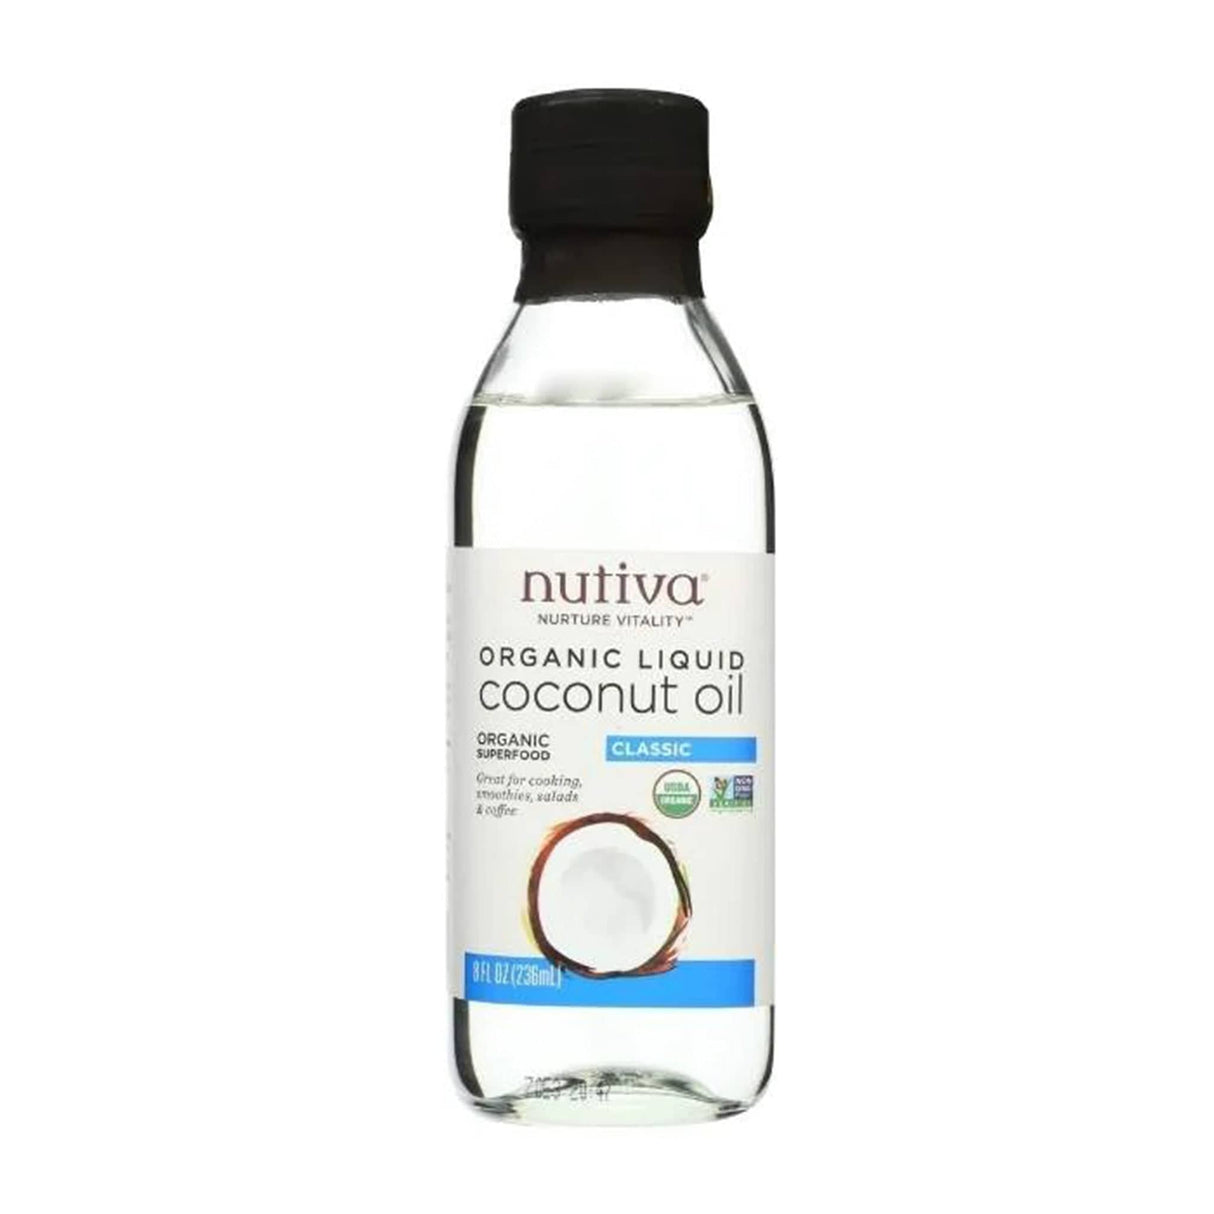 Nutiva Organic Liquid Coconut Oil